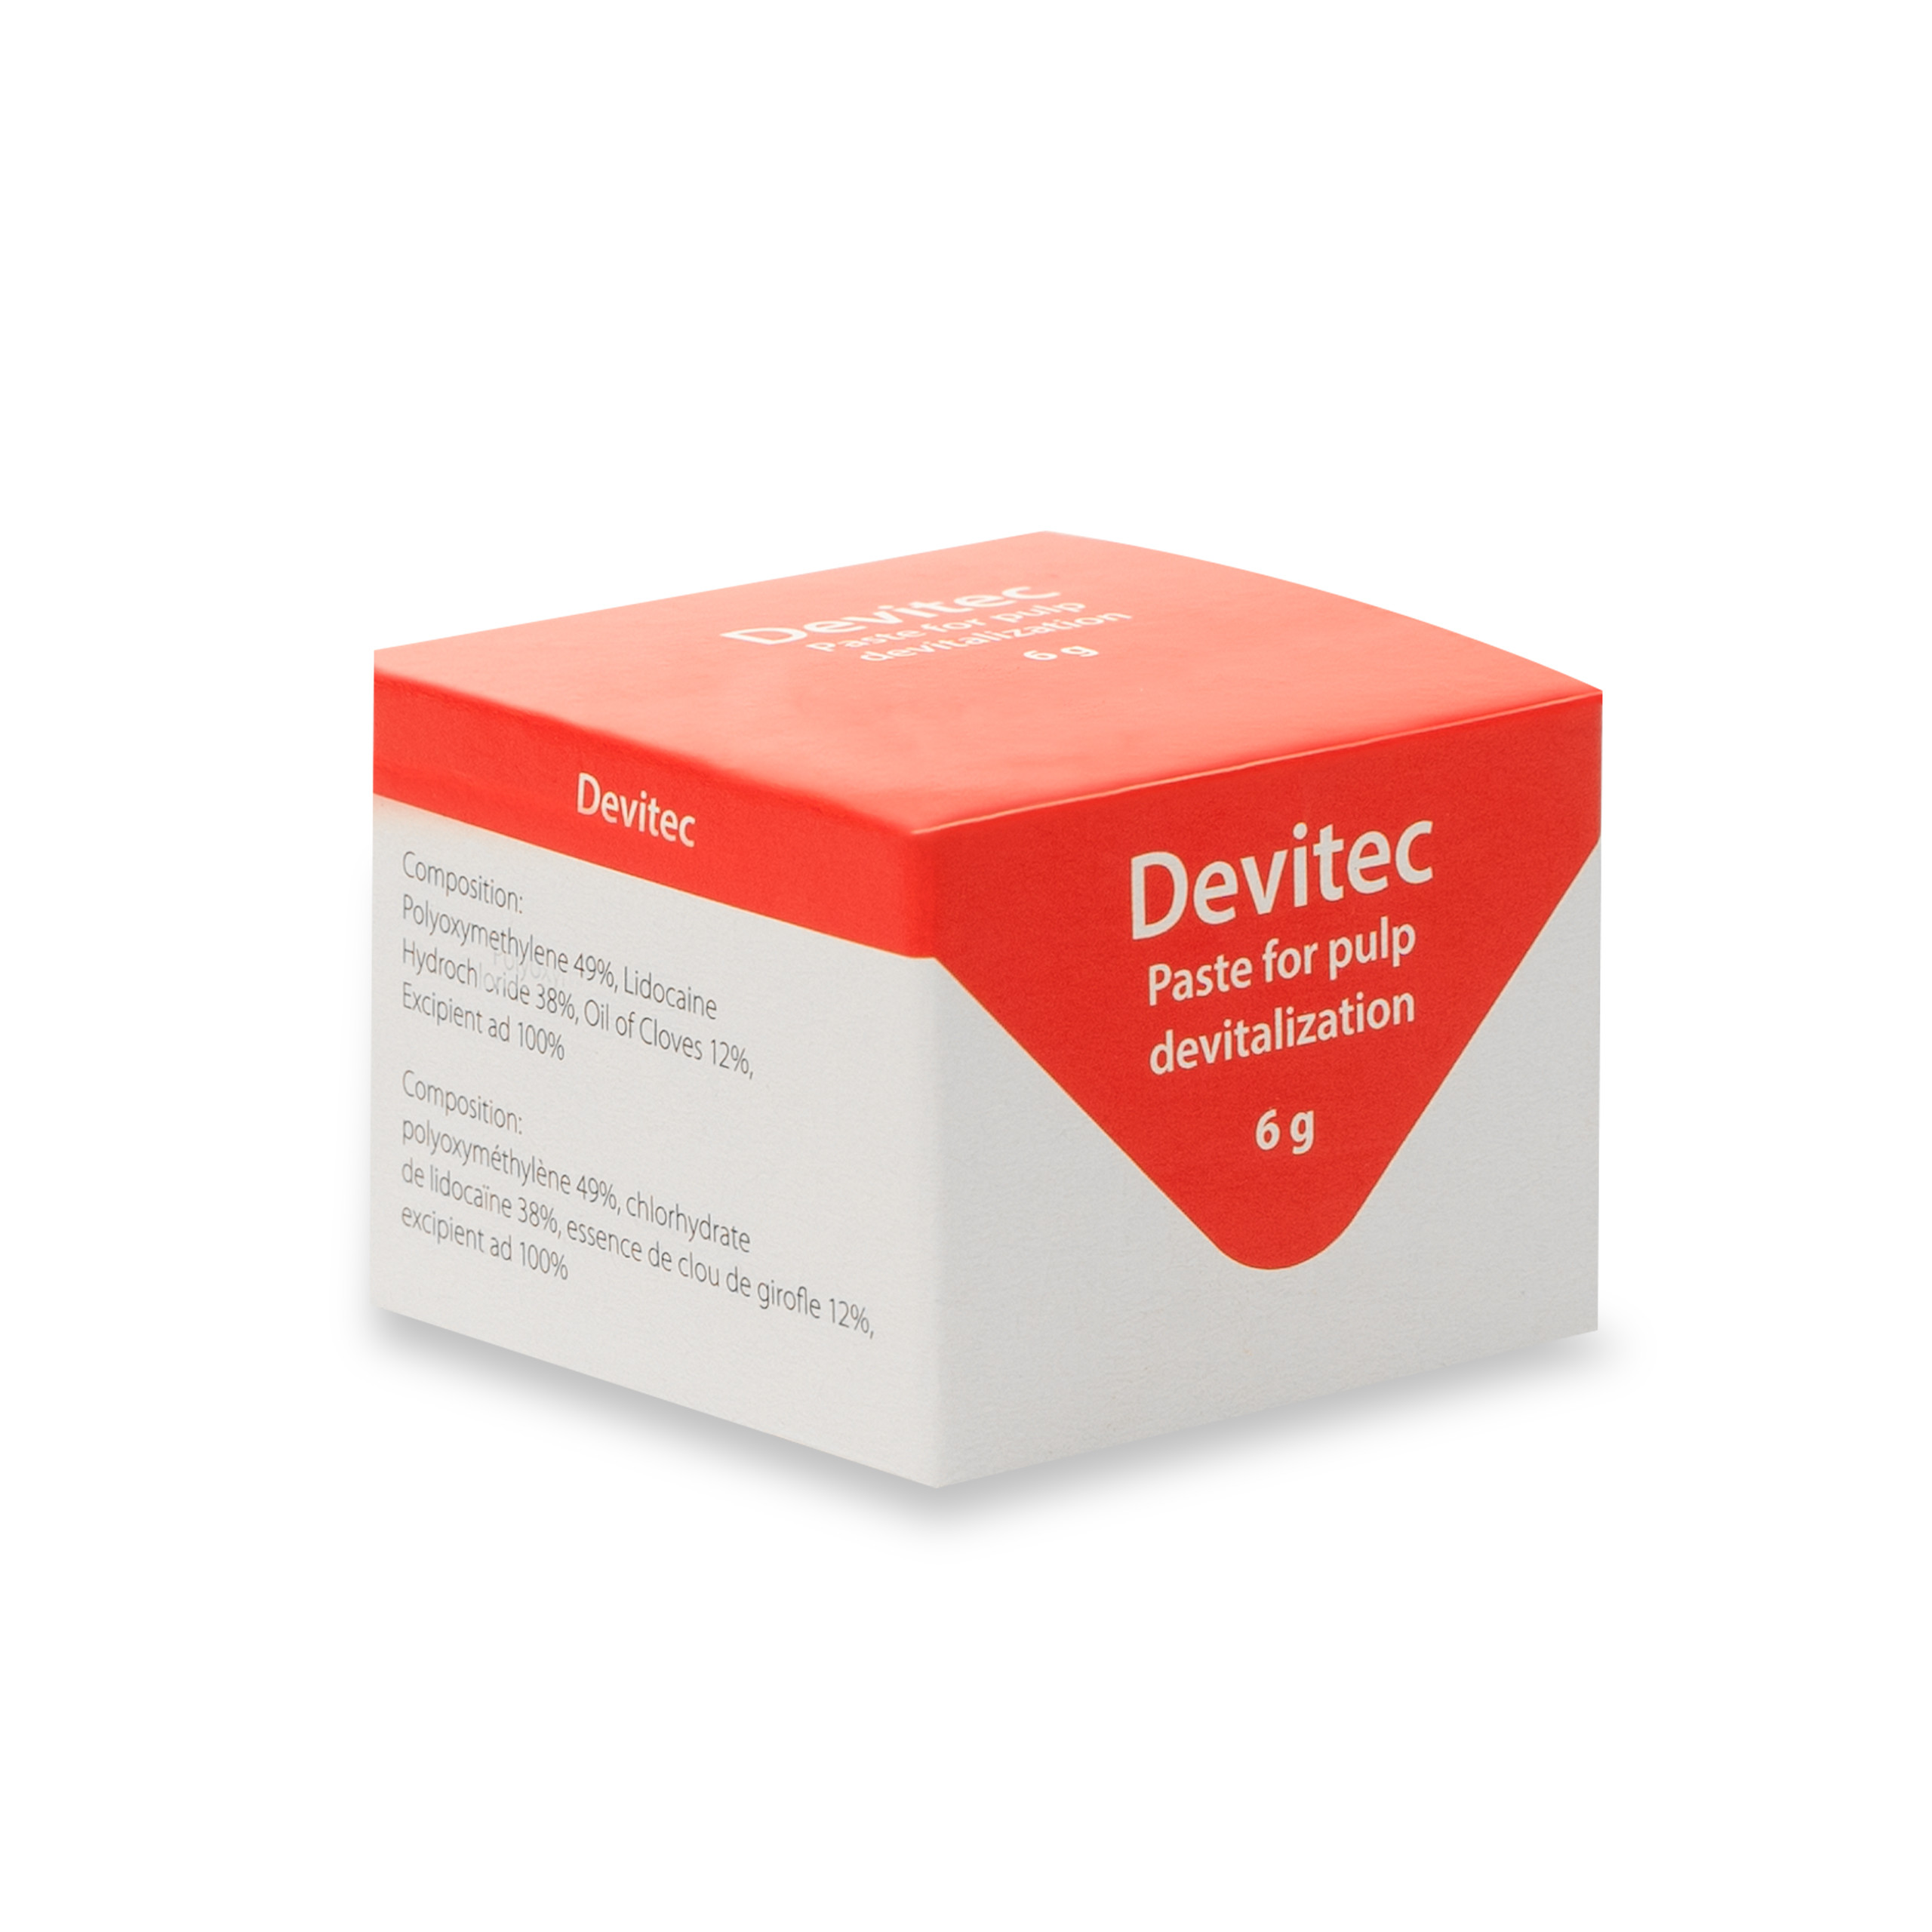 PD Devitec (Paste For Pulp Devitalization)